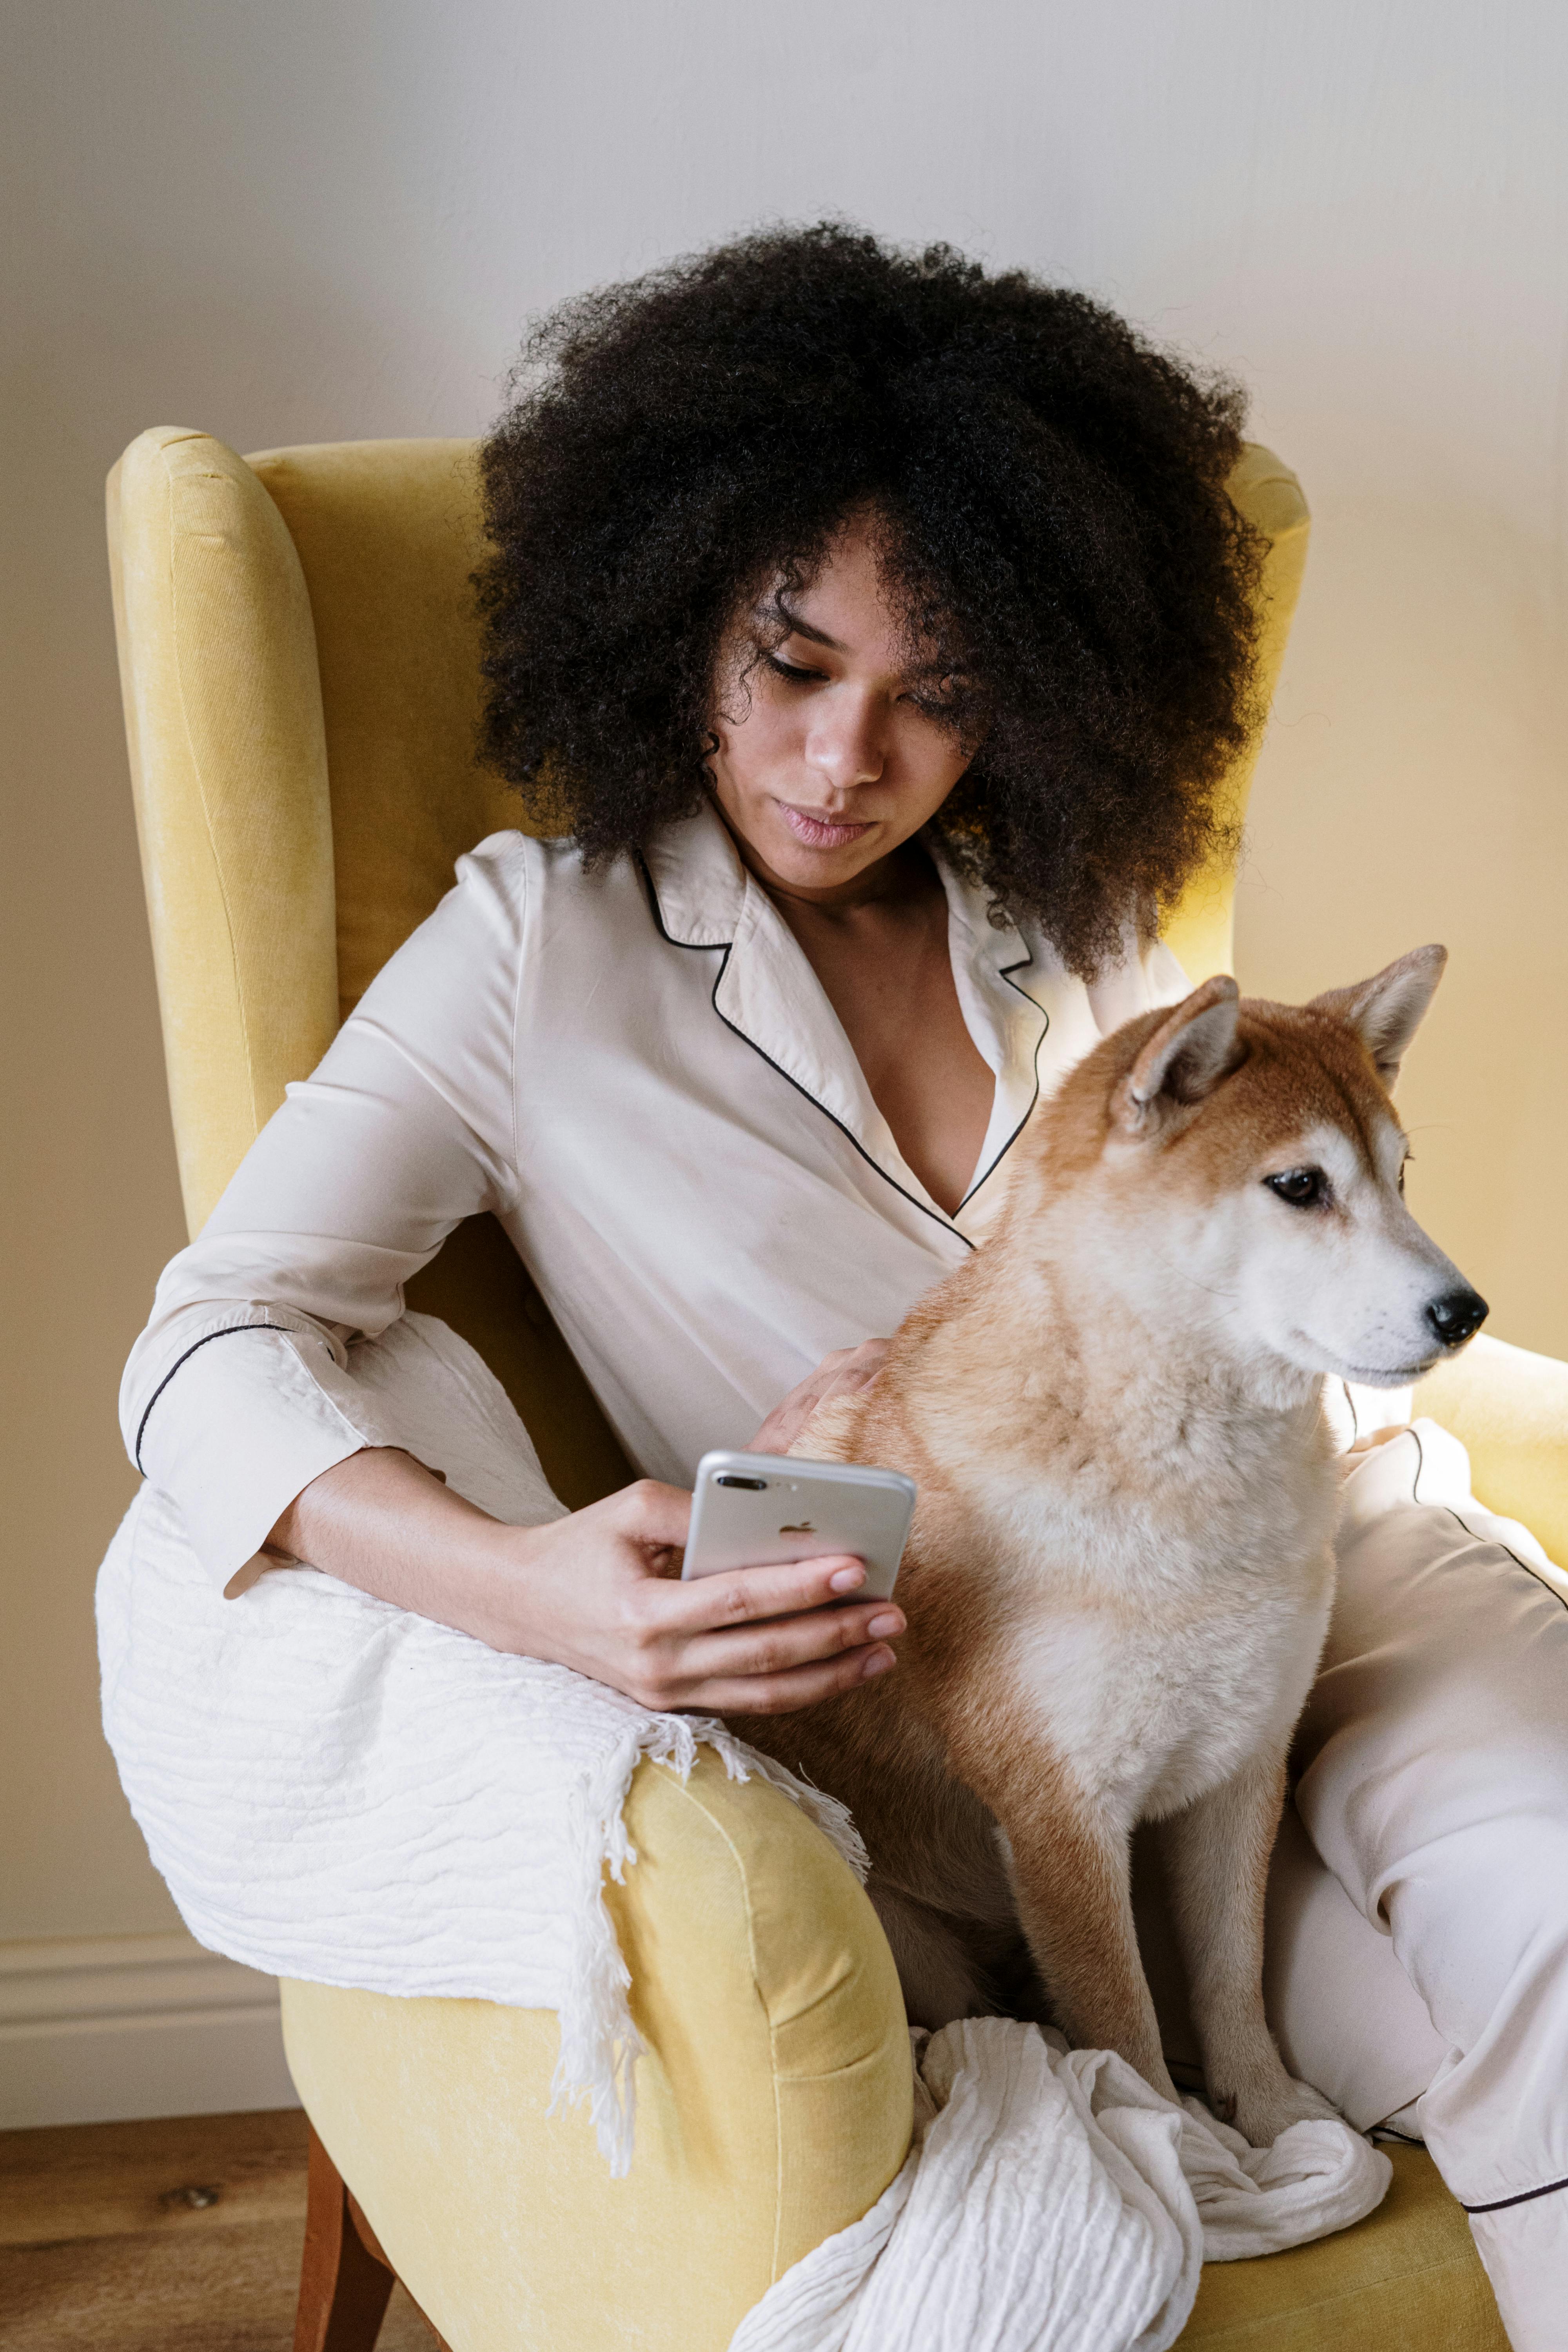 Una mujer en pijama sentada con su perro | Fuente: Pexels